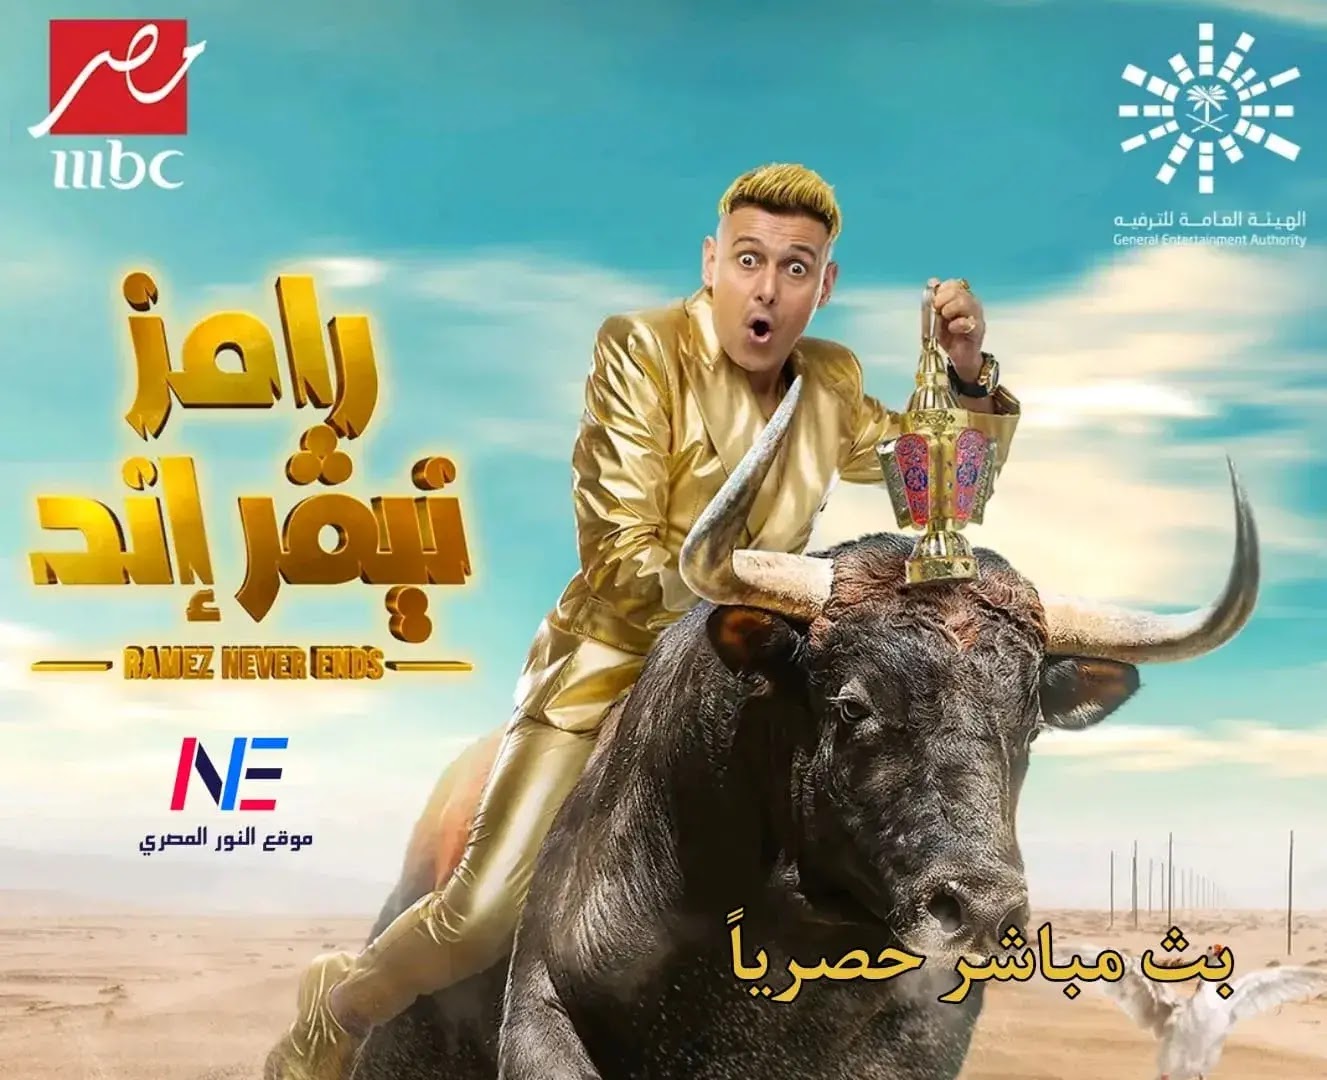 مباشر الان مشاهدة حلقات برنامج "رامز نيفر إند" رمضان 2023 كاملة فيديو يوتيوب - شاهد الحلقة الجديدة رامز نيفر إند مباشر بتاريخ اليوم الثلاثاء 18-4-2023 علي mbc مصر